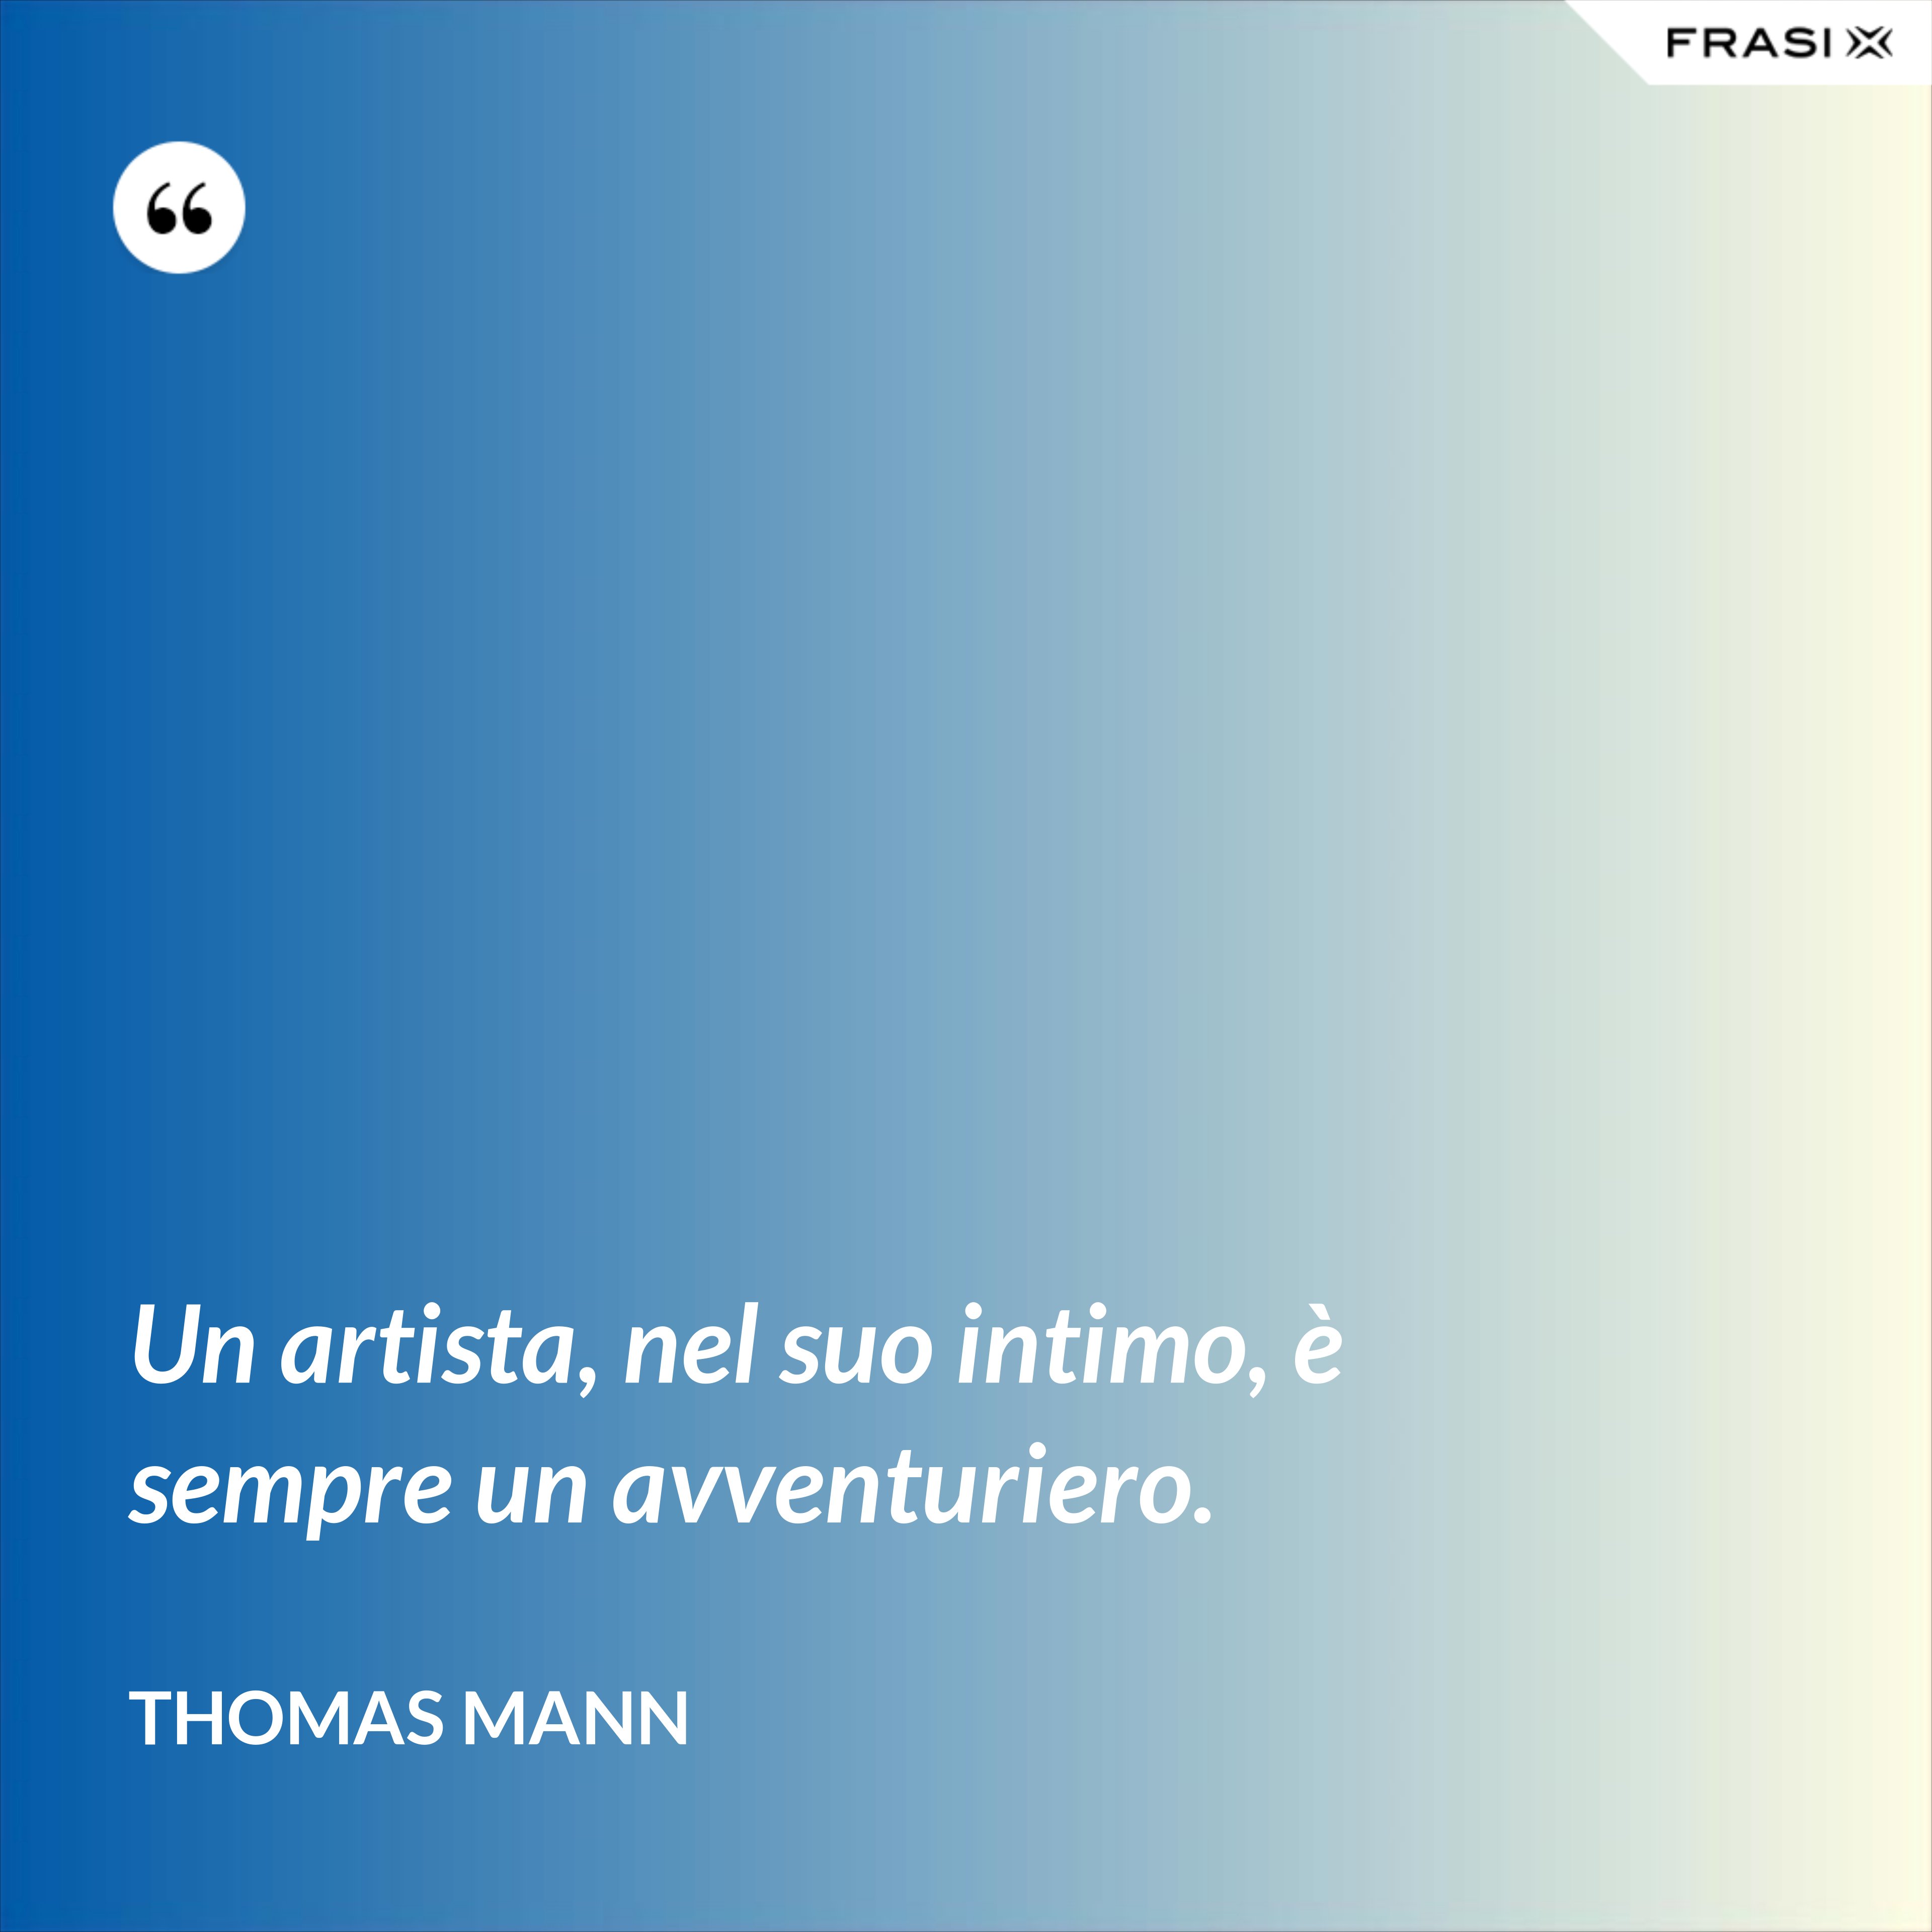 Un artista, nel suo intimo, è sempre un avventuriero. - Thomas Mann